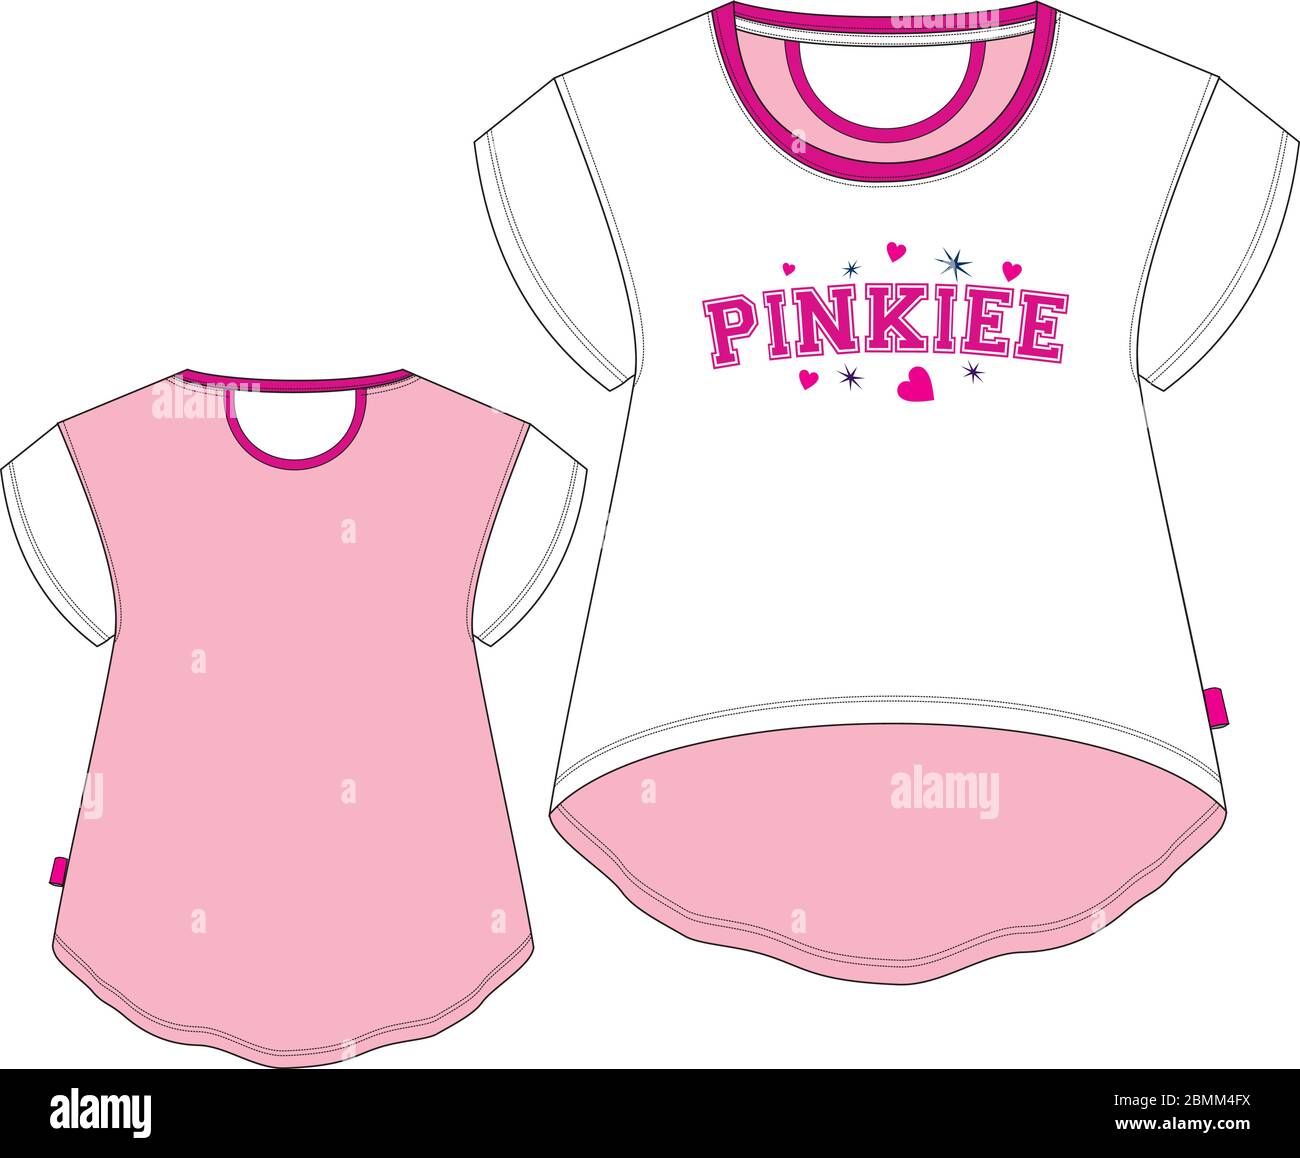 T-shirt fille Pinkiee modèle de croquis techniques Illustration de Vecteur